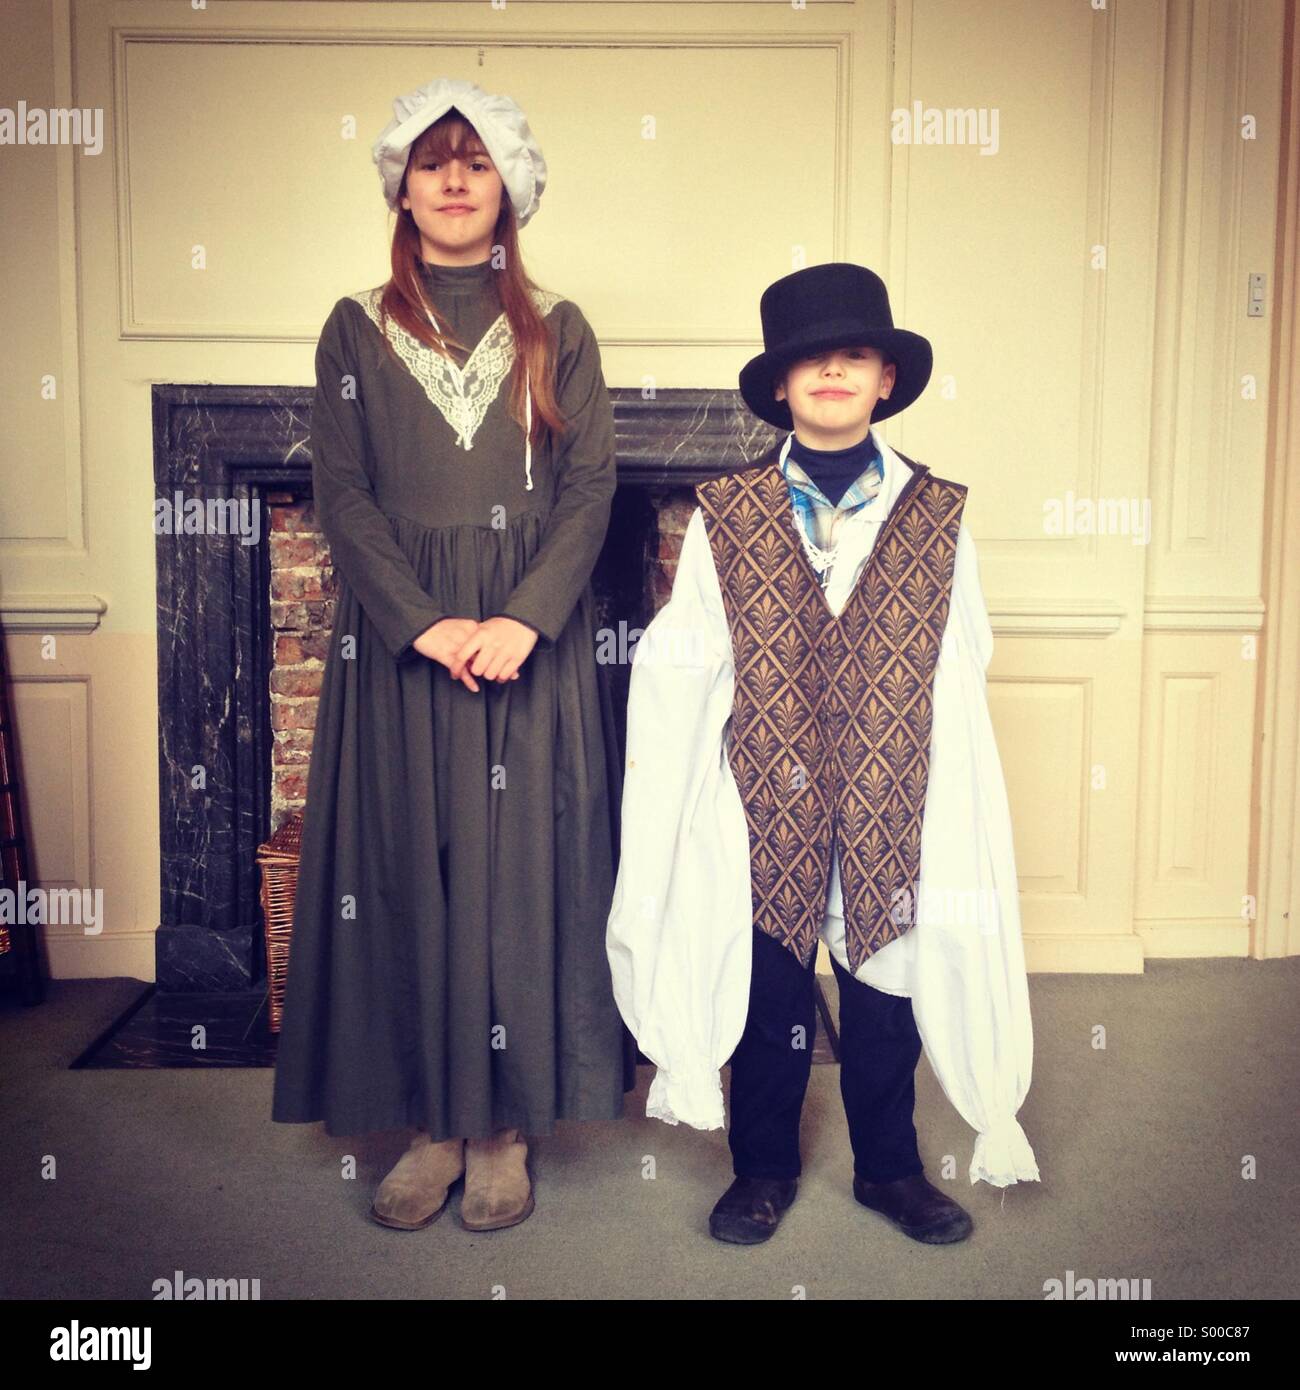 Frère et sœur s'habillant avec des vêtements à l'ancienne Photo Stock -  Alamy